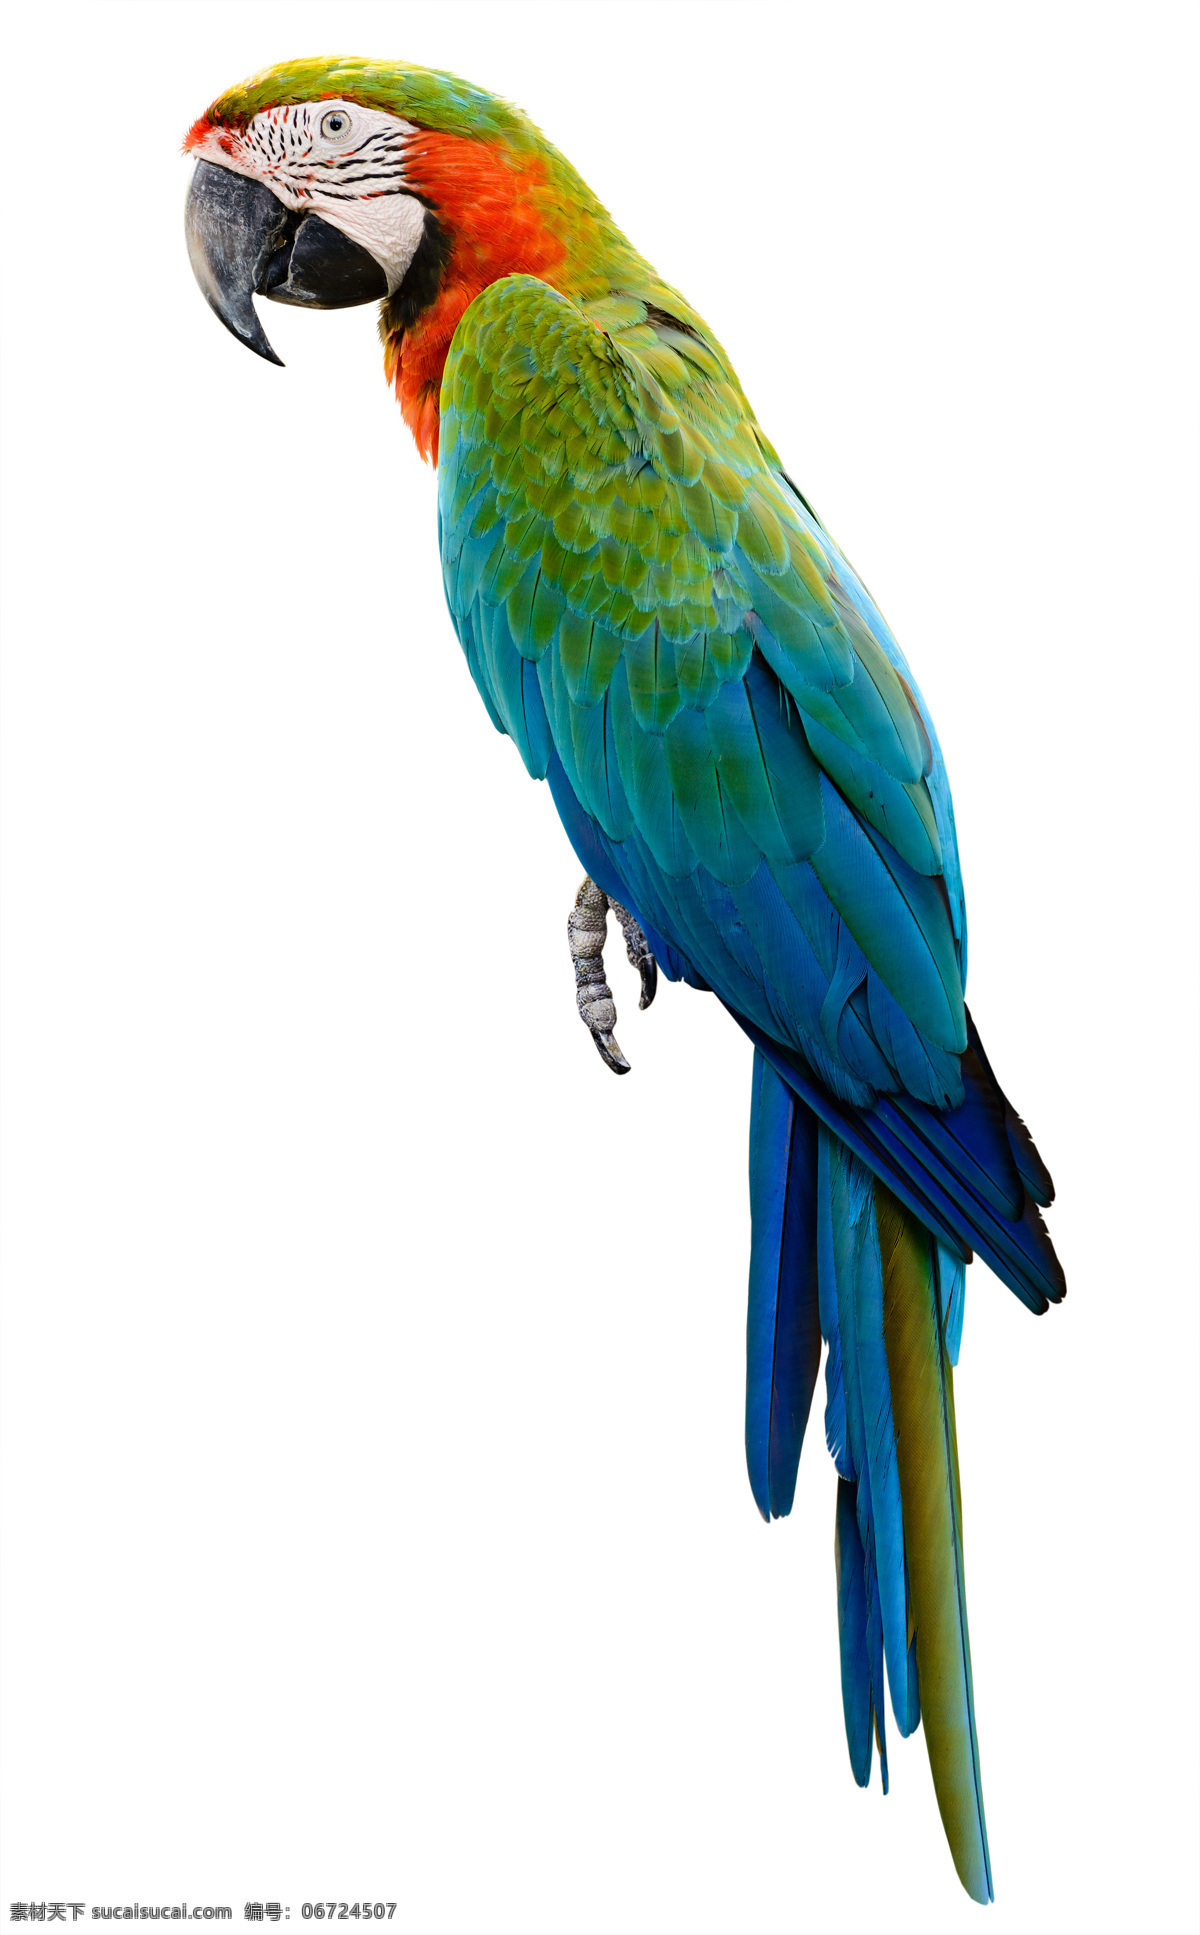 漂亮 鹦鹉 鹦鹉图片 彩色鹦鹉 七彩鹦鹉 巴哥 美丽鹦鹉 鹦鹉素材 鸟类 特写 生物世界 动物图片 鸟类大全 空中飞鸟